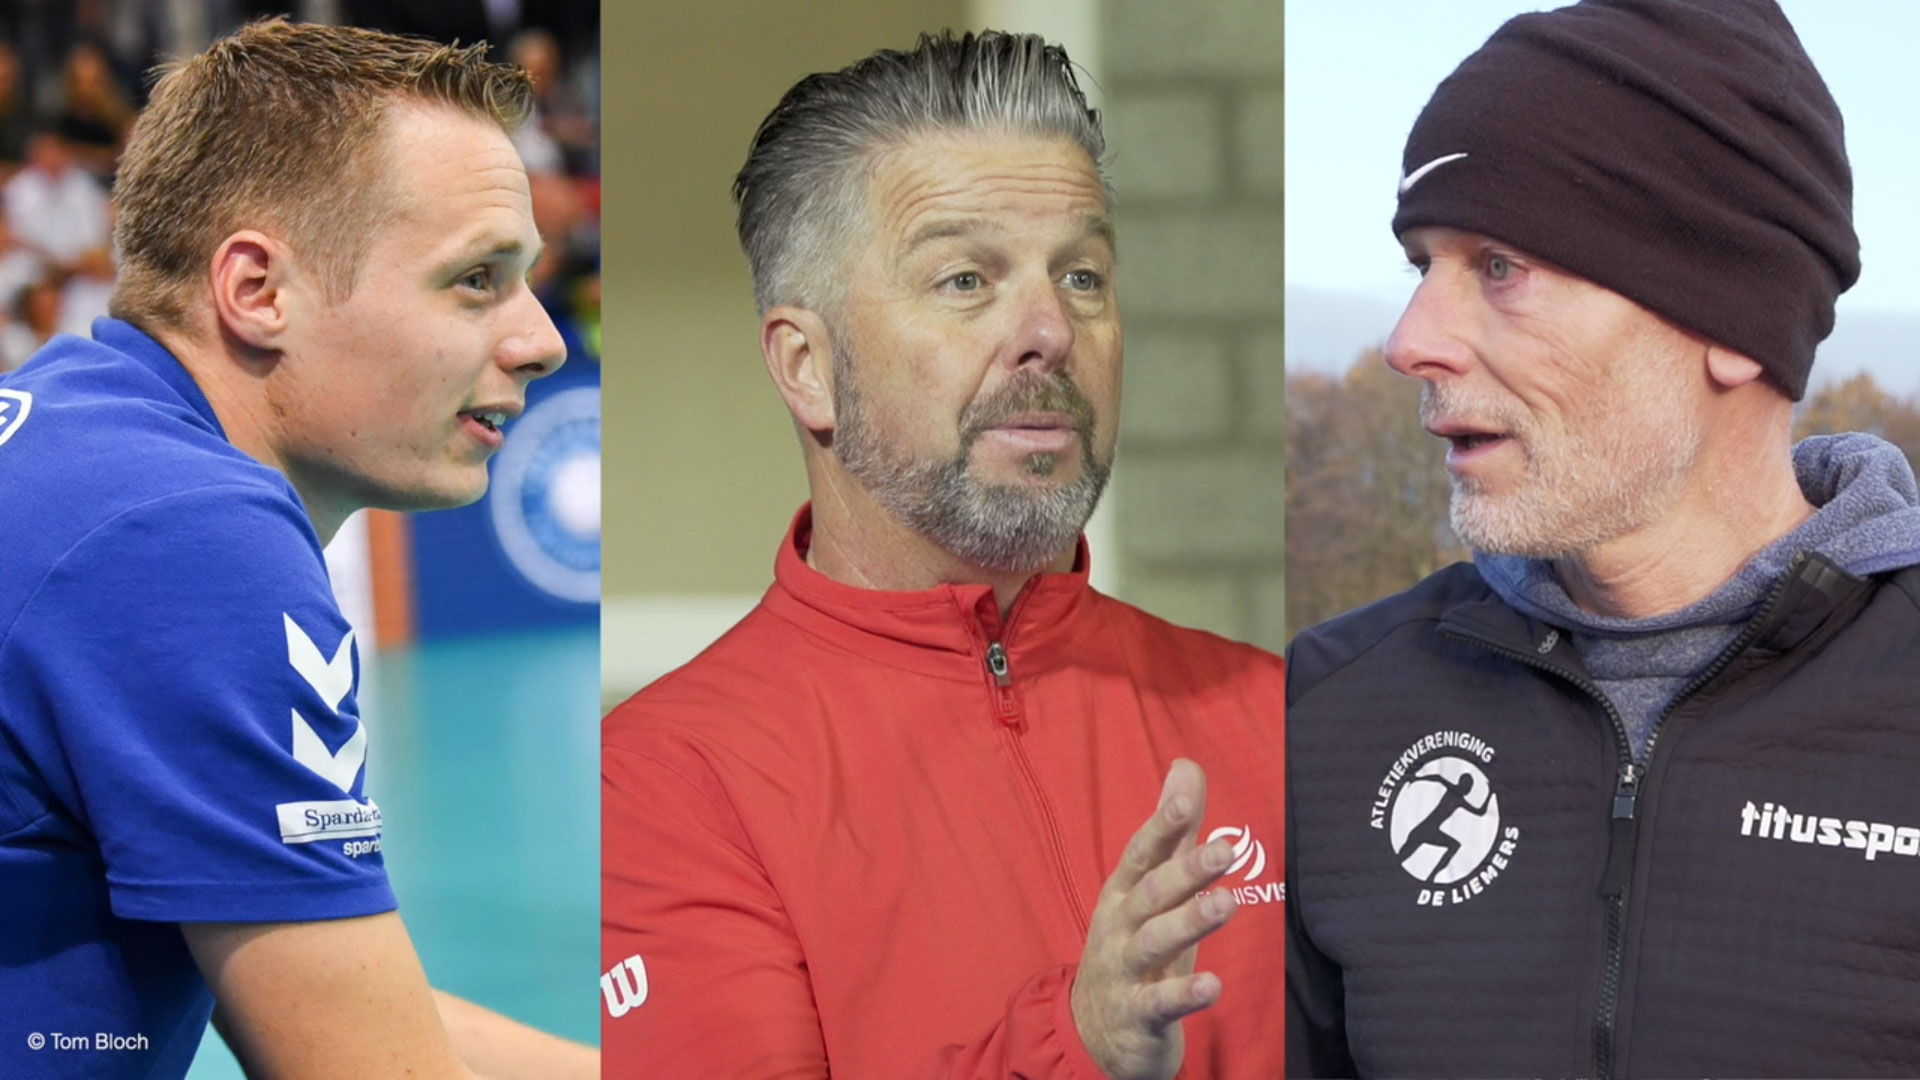 De genomineerden voor Liemerse Sportcoach 2019 stellen zich voor!